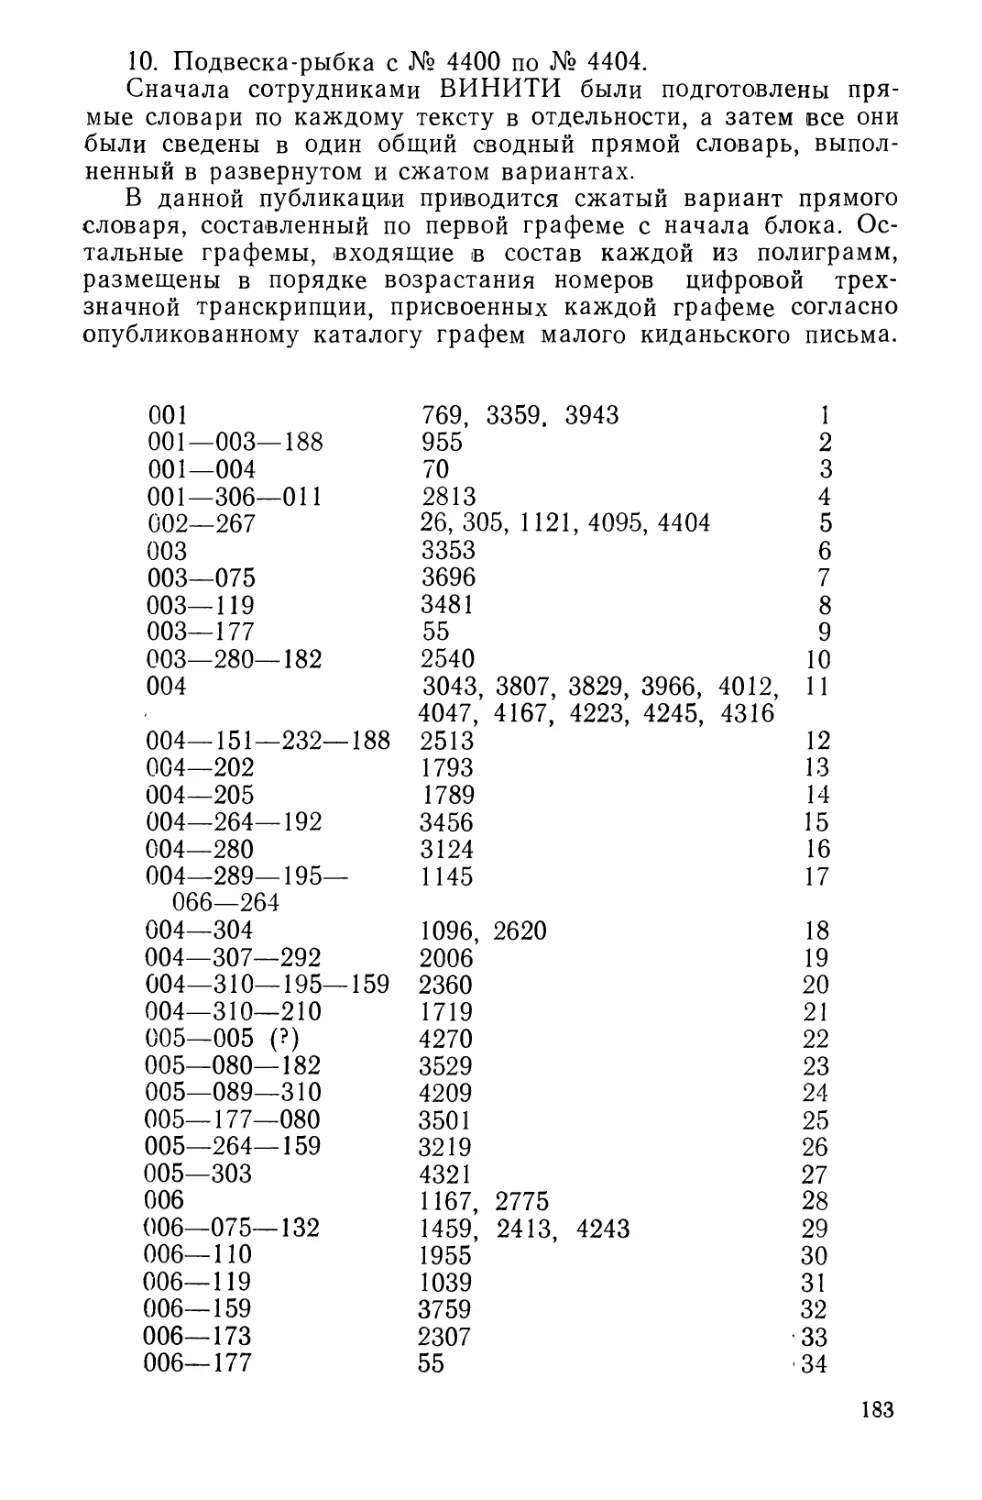 Словарь киданьской лексики XI—XII вв